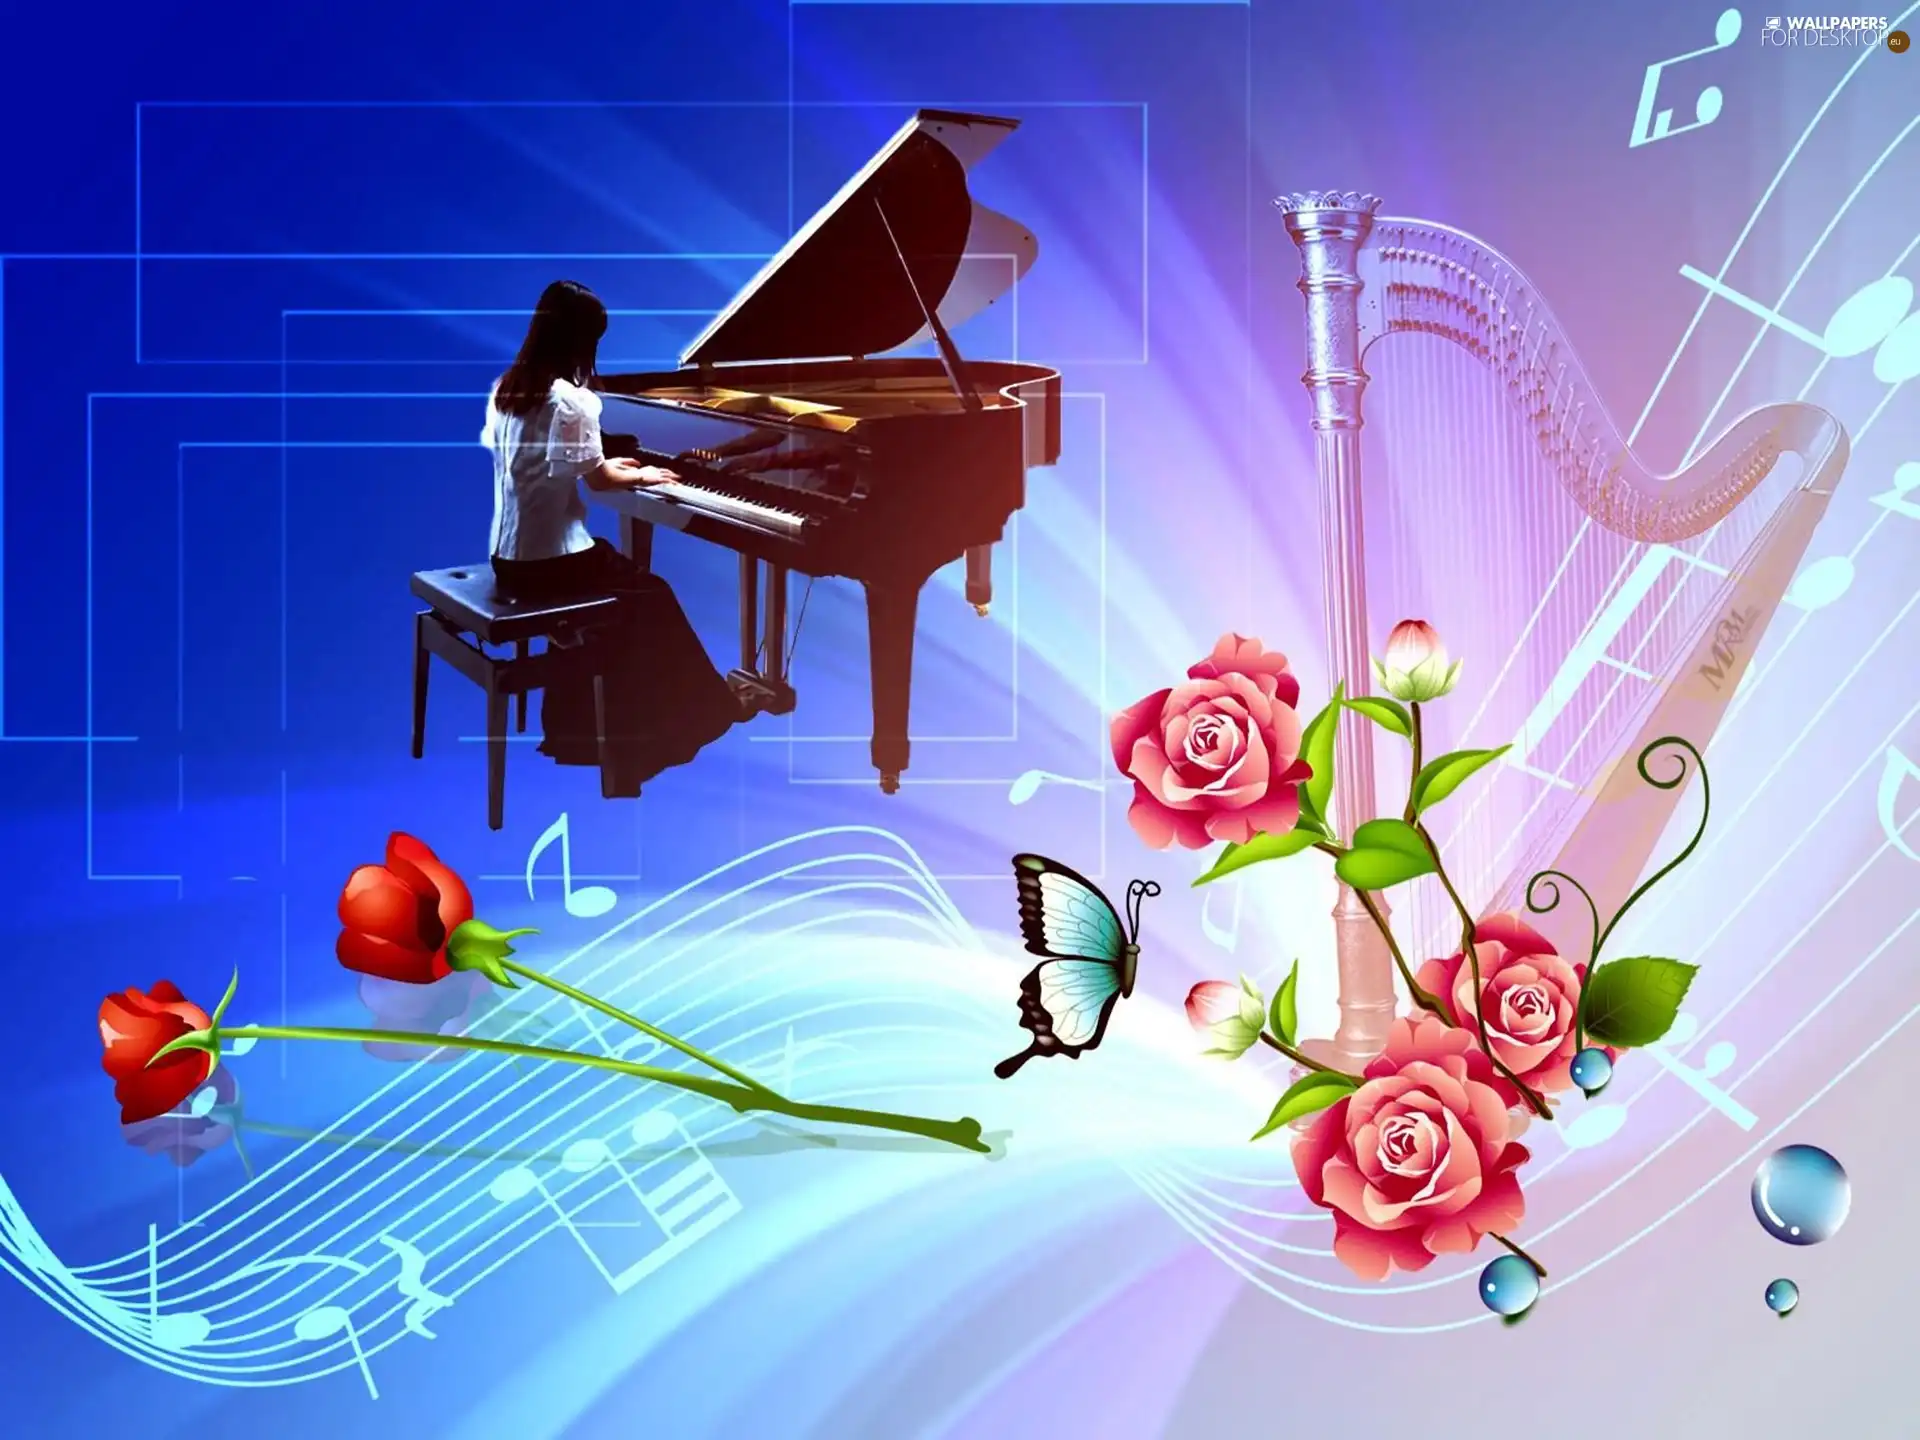 Flowers, Piano, harp